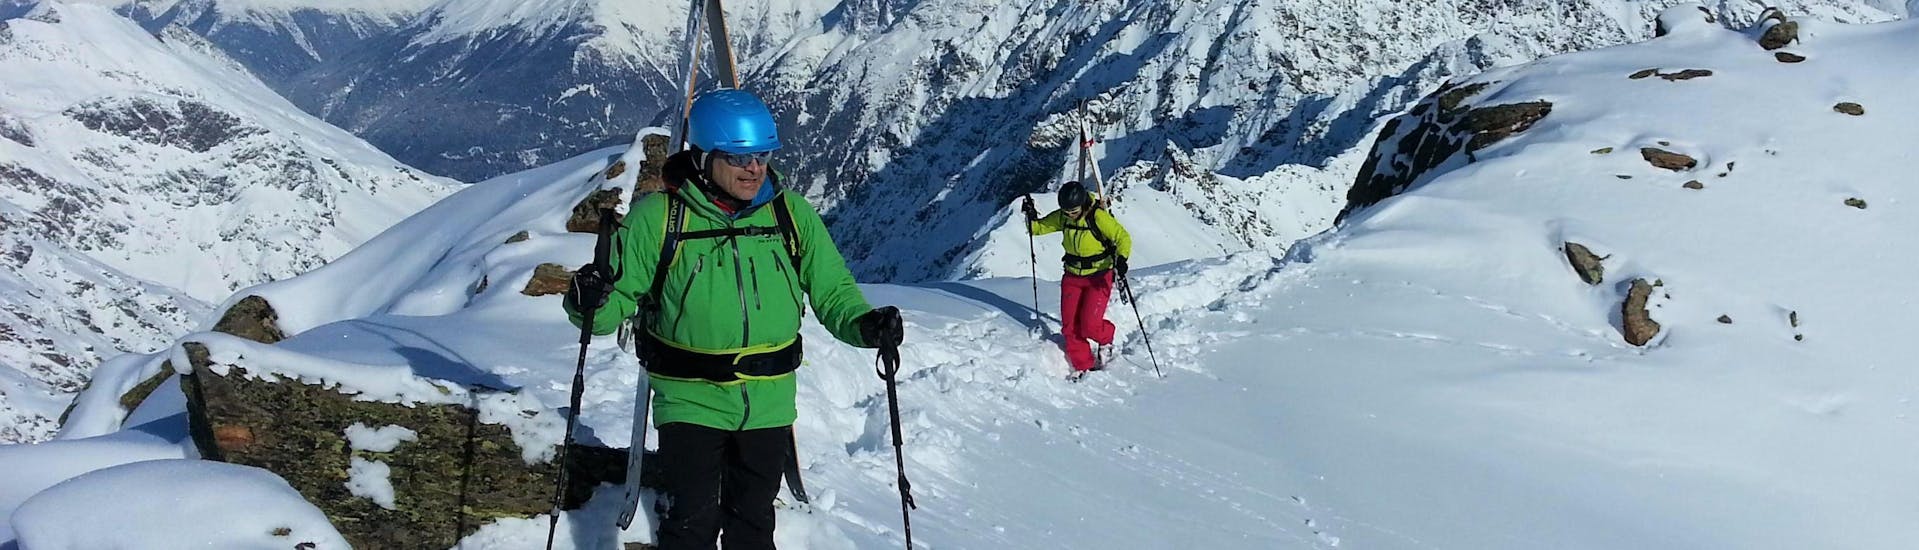 Una guida privata di sci alpinismo della scuola di sci Ski- und Snowboardschule SNOWLINES Sölden mostra la magnifica vista delle cime innevate della stazione sciistica di Sölden a un partecipante della guida privata di sci alpinismo.